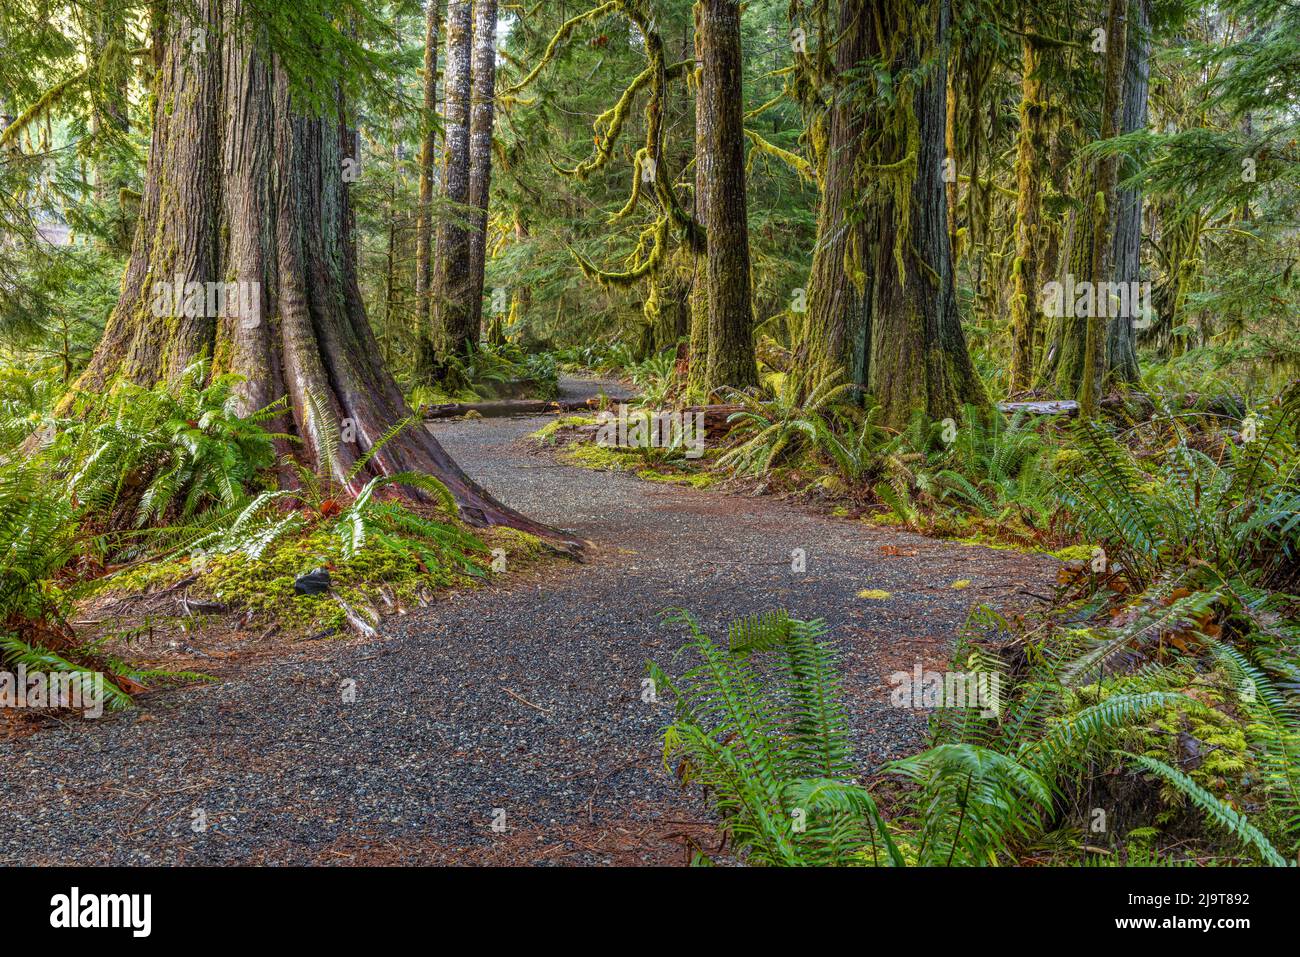 Stati Uniti, Washington state, Olympic National Park. Sentiero attraverso foresta di mosy. Foto Stock